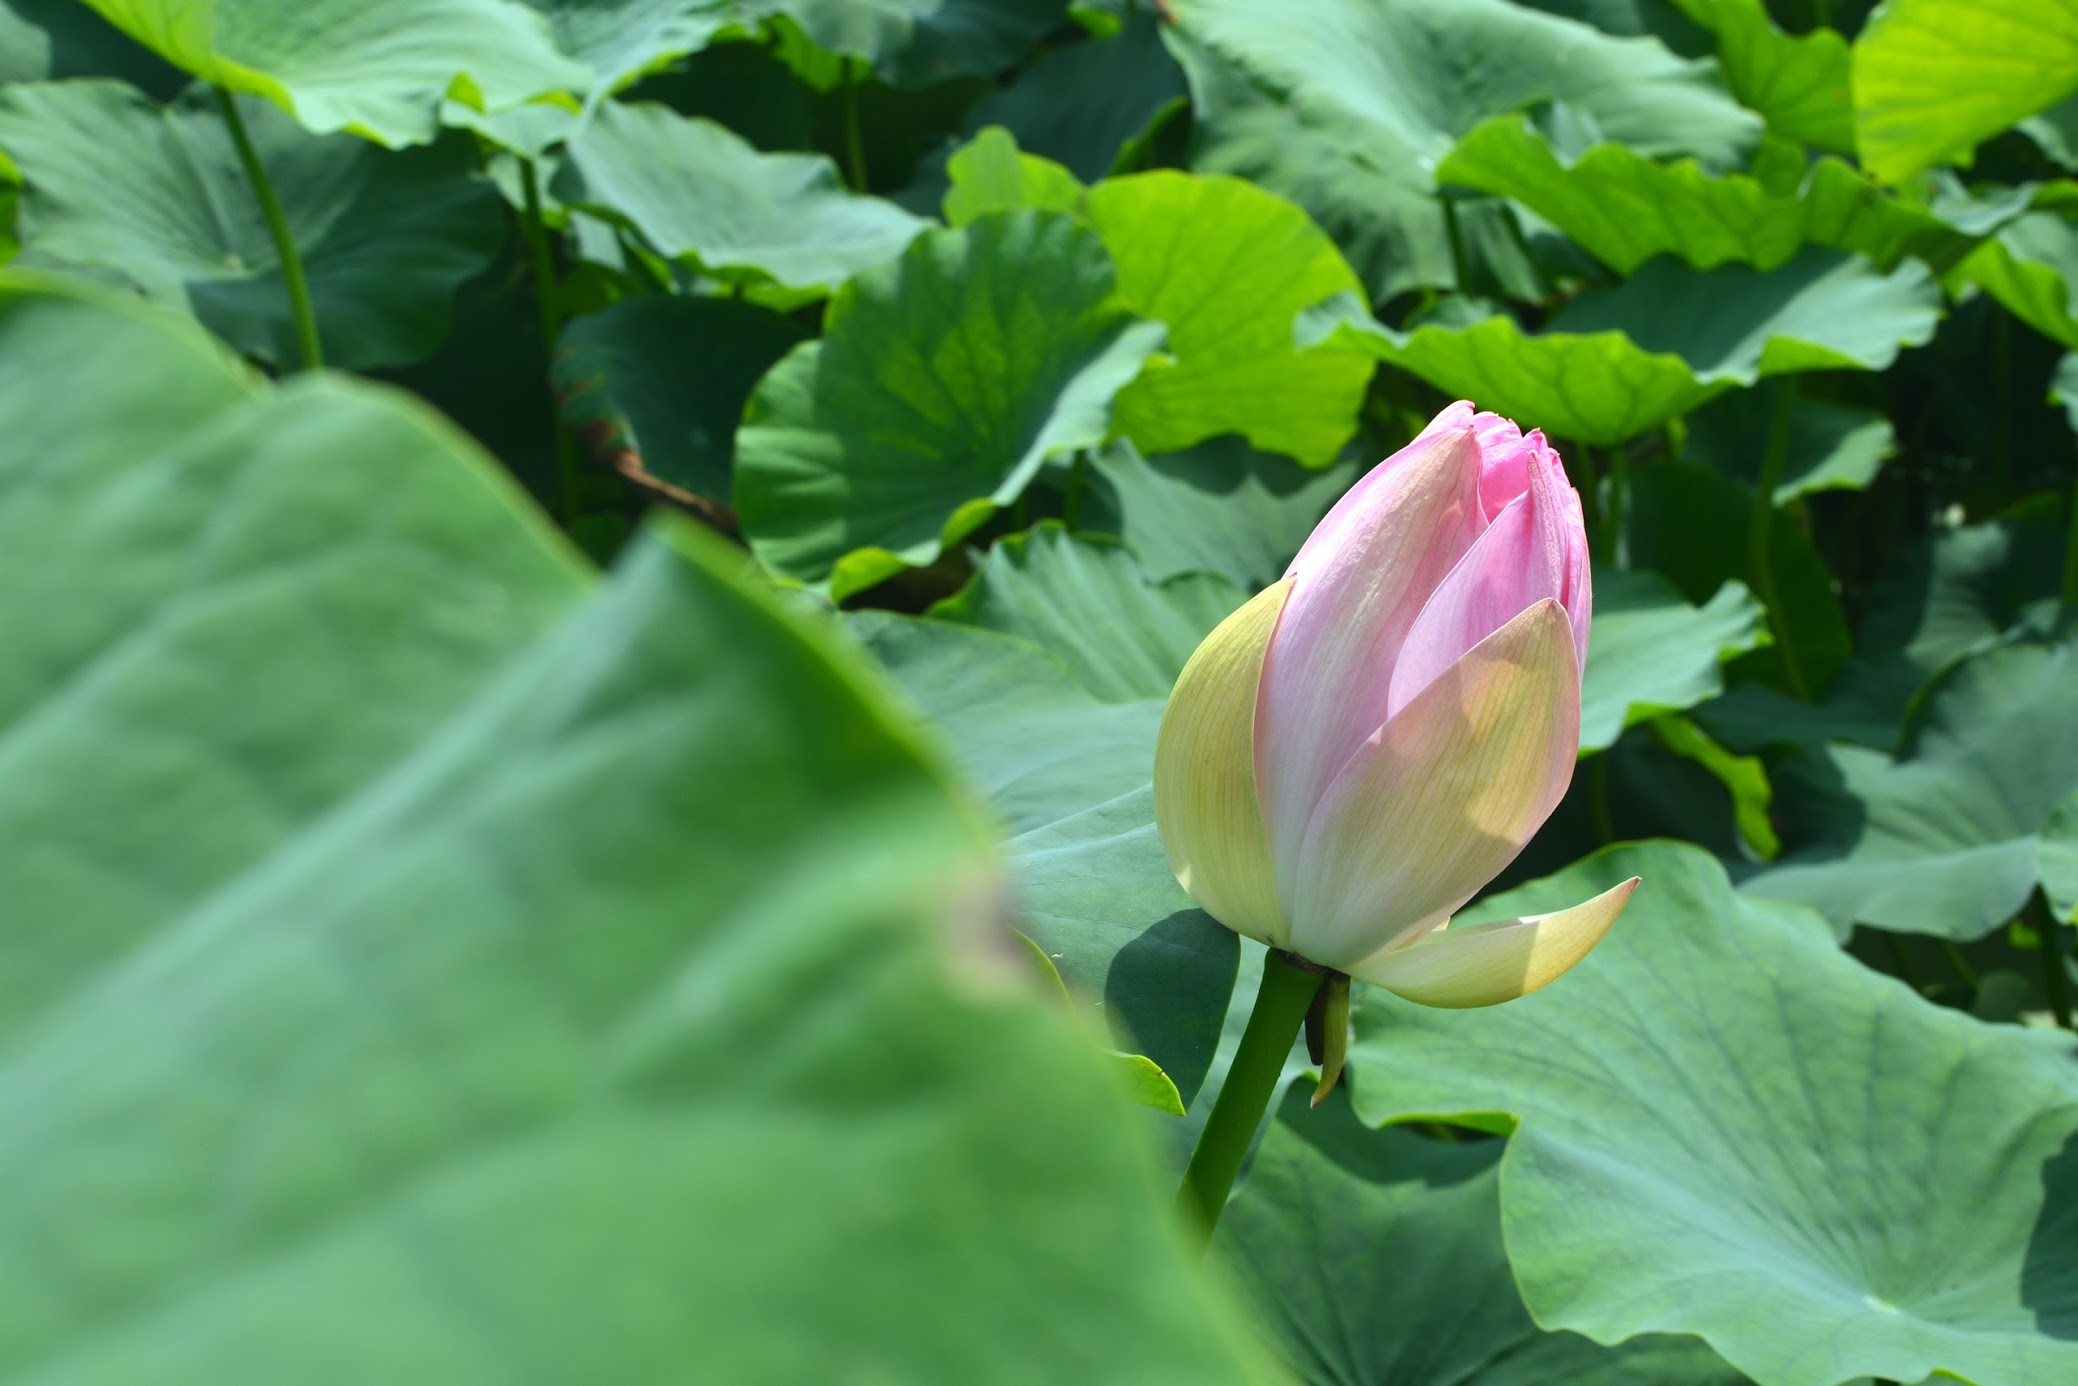 徳島 レンコン畑の蓮の花 Tokushima Flowers Of Lotus Land 物語を届けるしごと